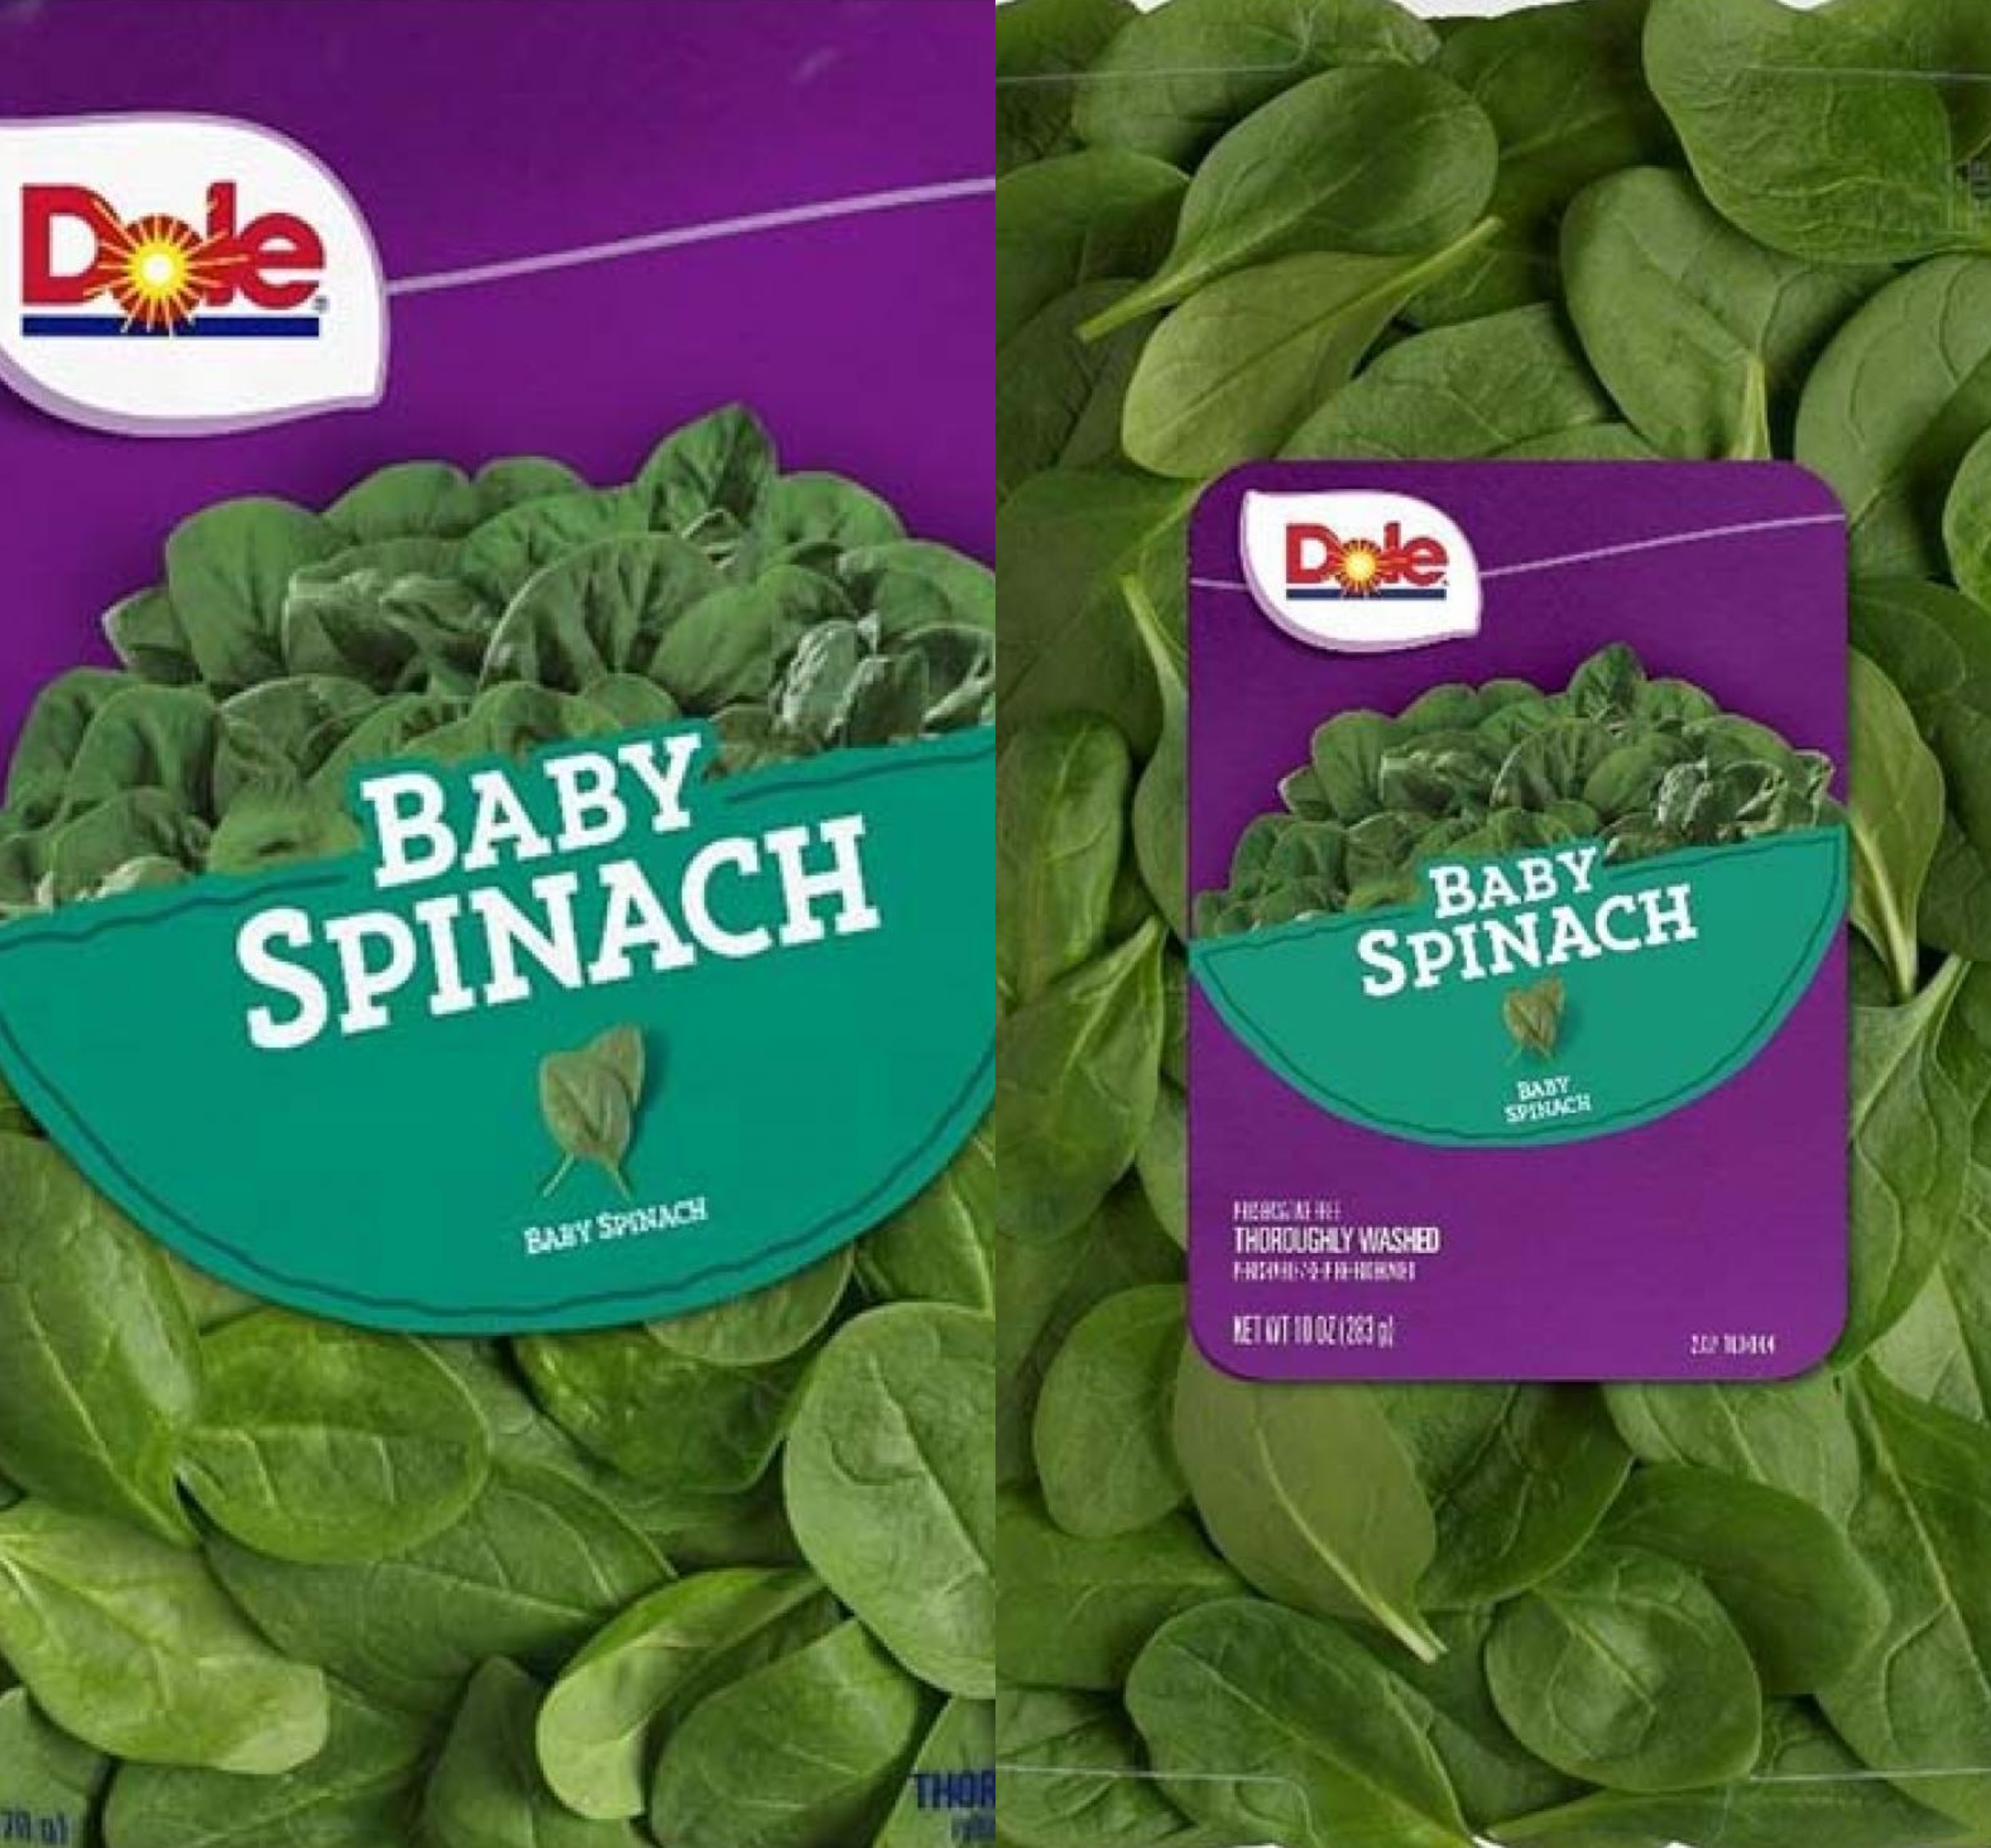 Dole Recalls Baby Spinach Over Salmonella Concerns